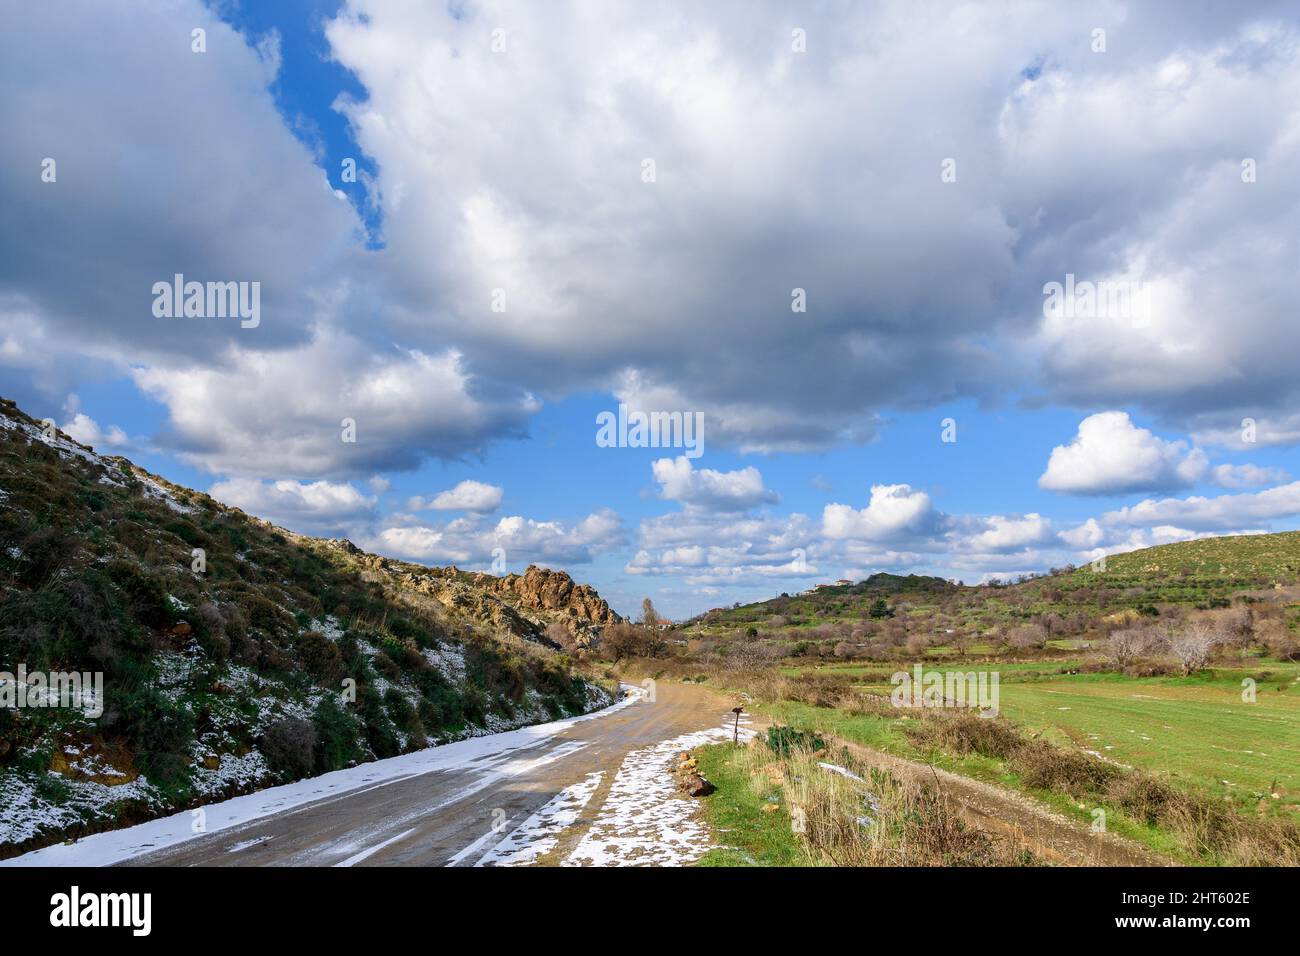 Myrina de l'île de Lemnos, avec des routes enneigées et un ciel bleu avec des nuages. Le château en arrière-plan. Banque D'Images